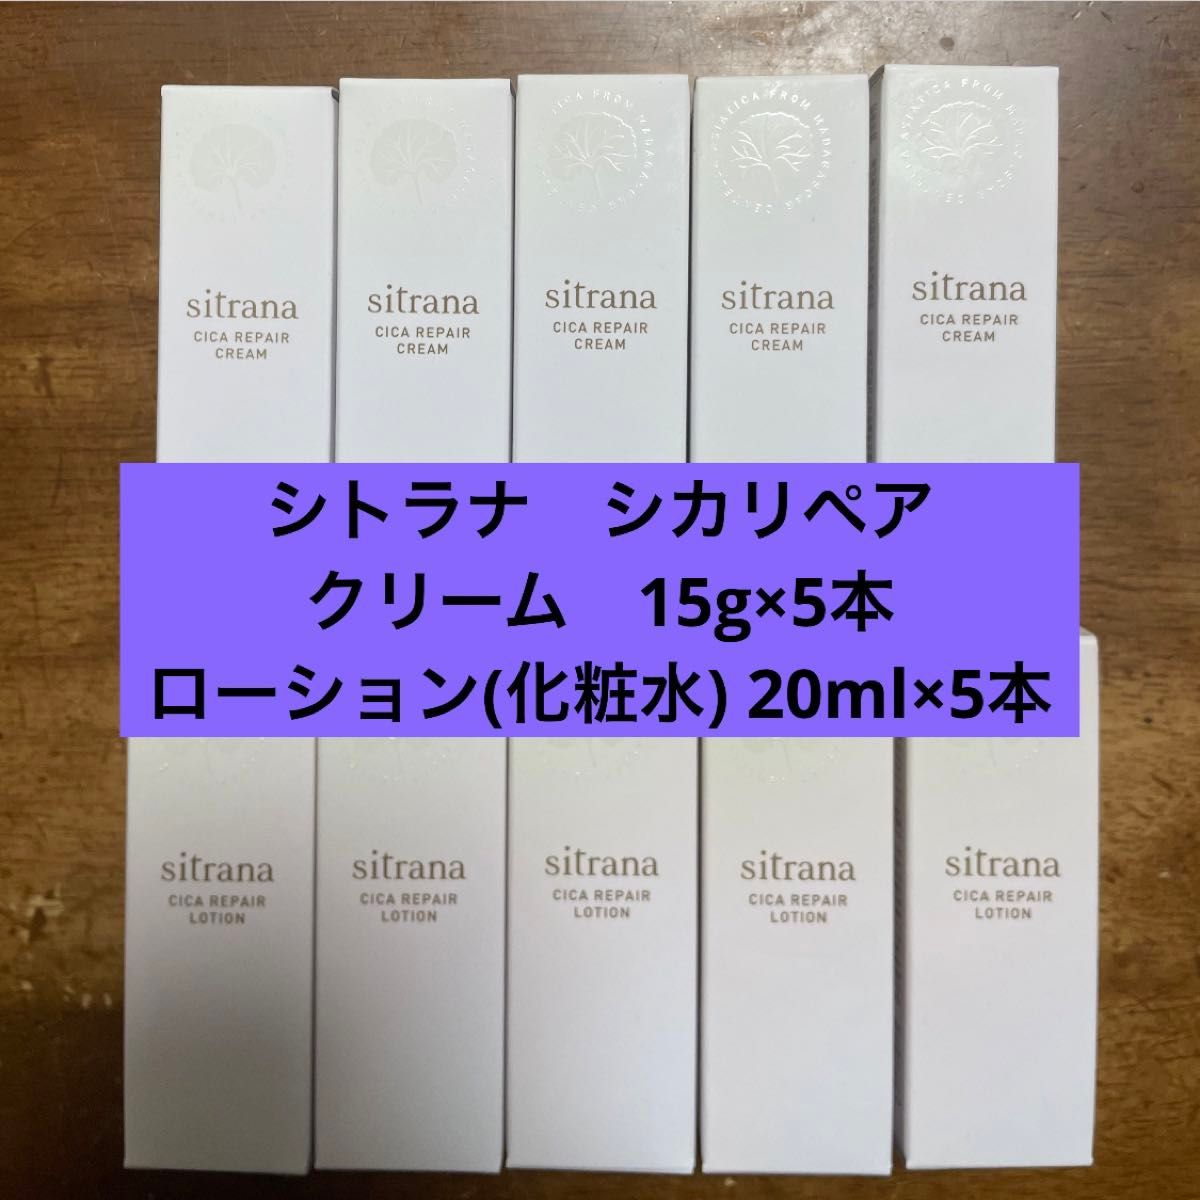 シトラナ シカR ローション 化粧水 20ml × 5 クリーム 15g × 5